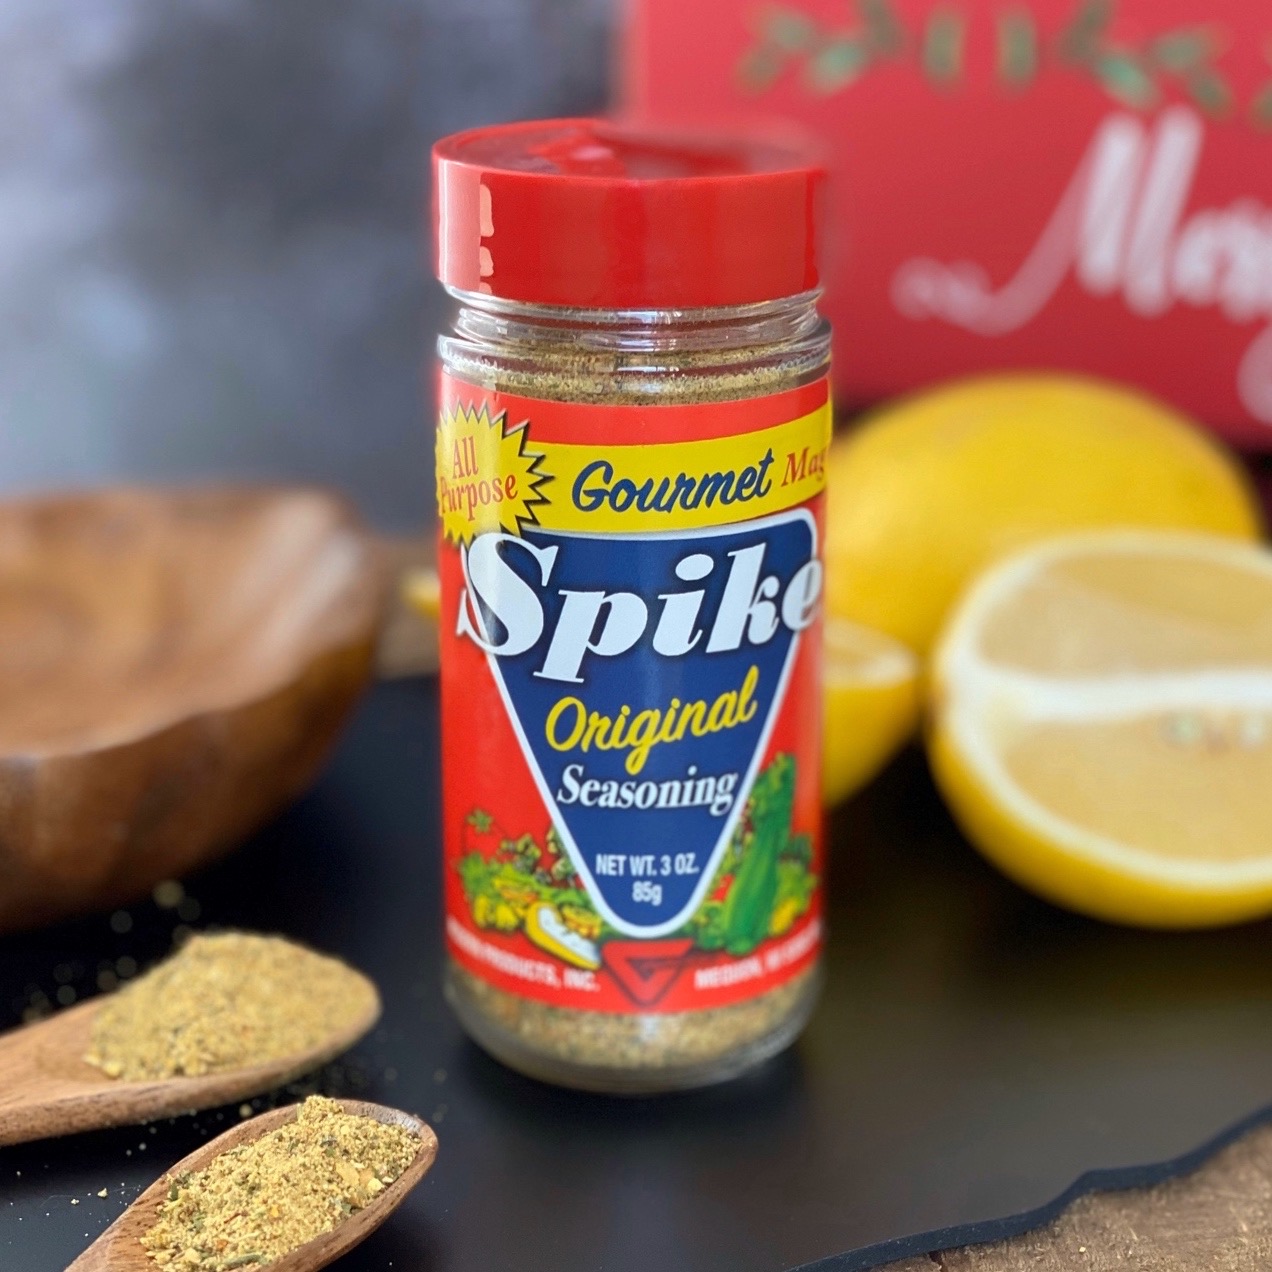 Spike Spike Seasoning Review